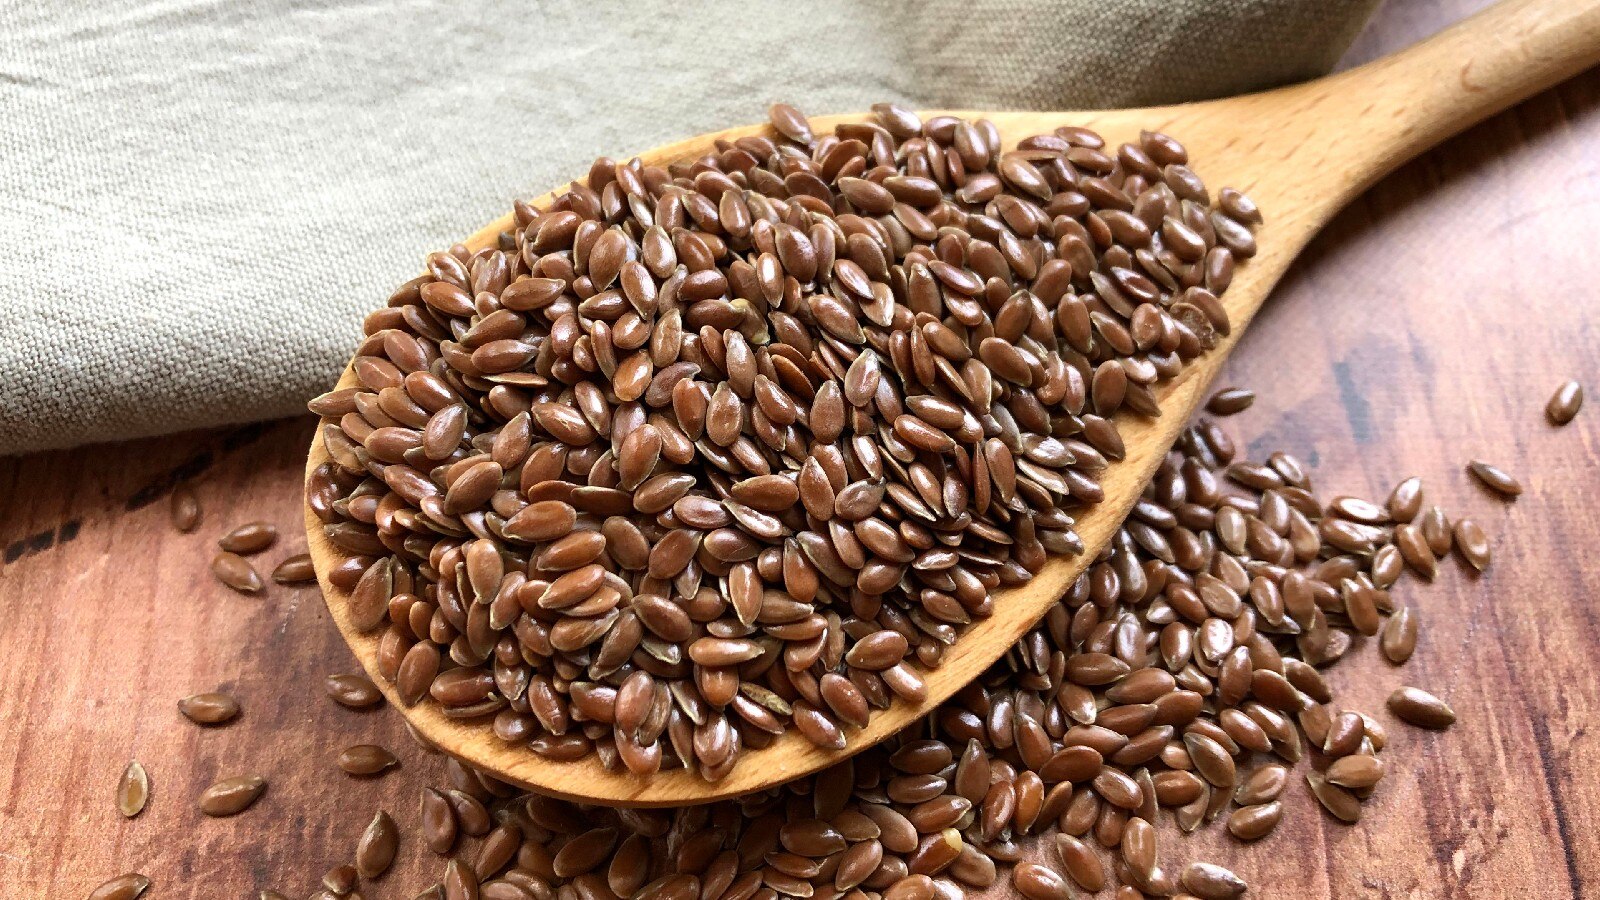 Jaane flax seeds hormones ko kis trah se santulit rakhna hai. – जानें फ्लैक्स सीड्स हार्मोंस को किस तरह से संतुलित रखता है।